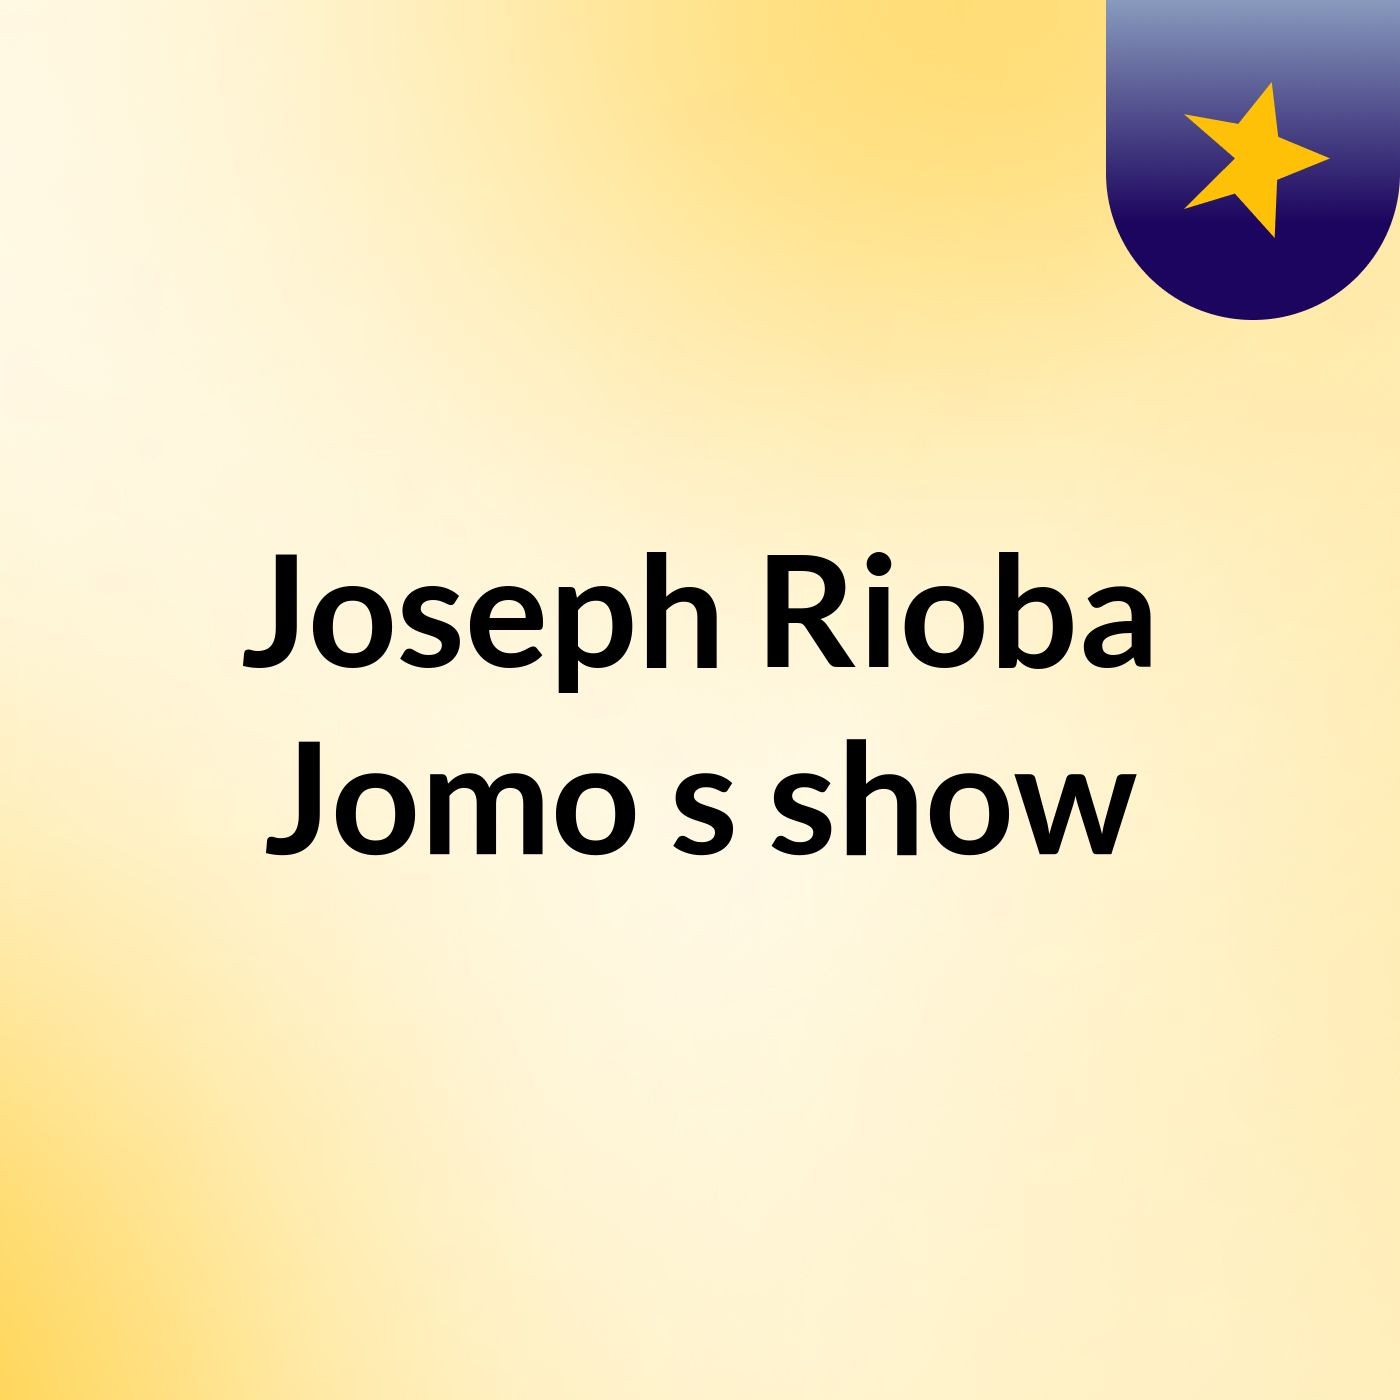 Joseph Rioba Jomo's show